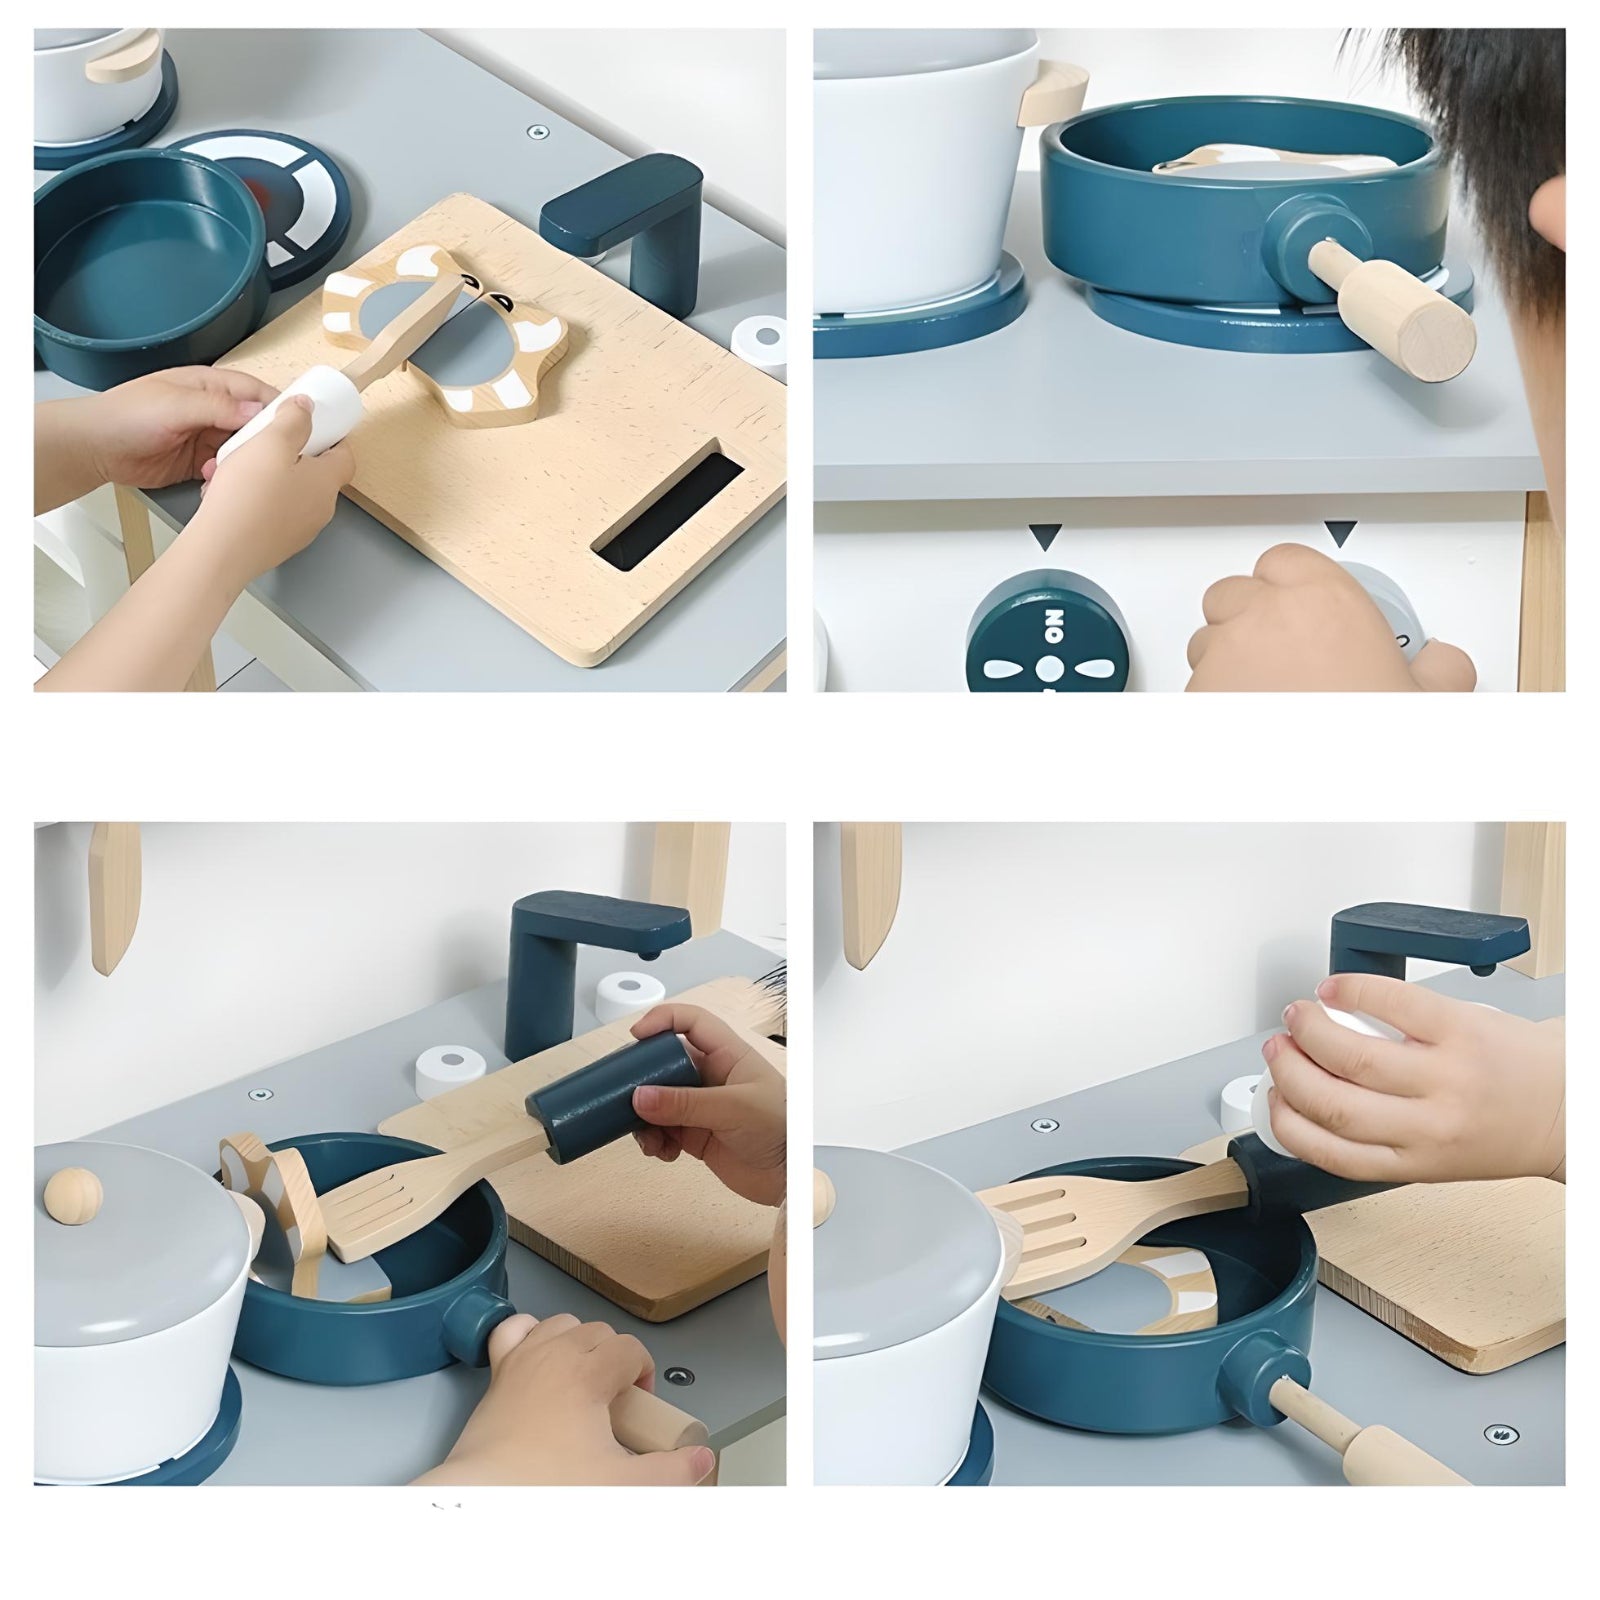 Petit Seal Kinder Holzspielküche mit Zubehör - Einladendes Design für fantasievolles Spielen!